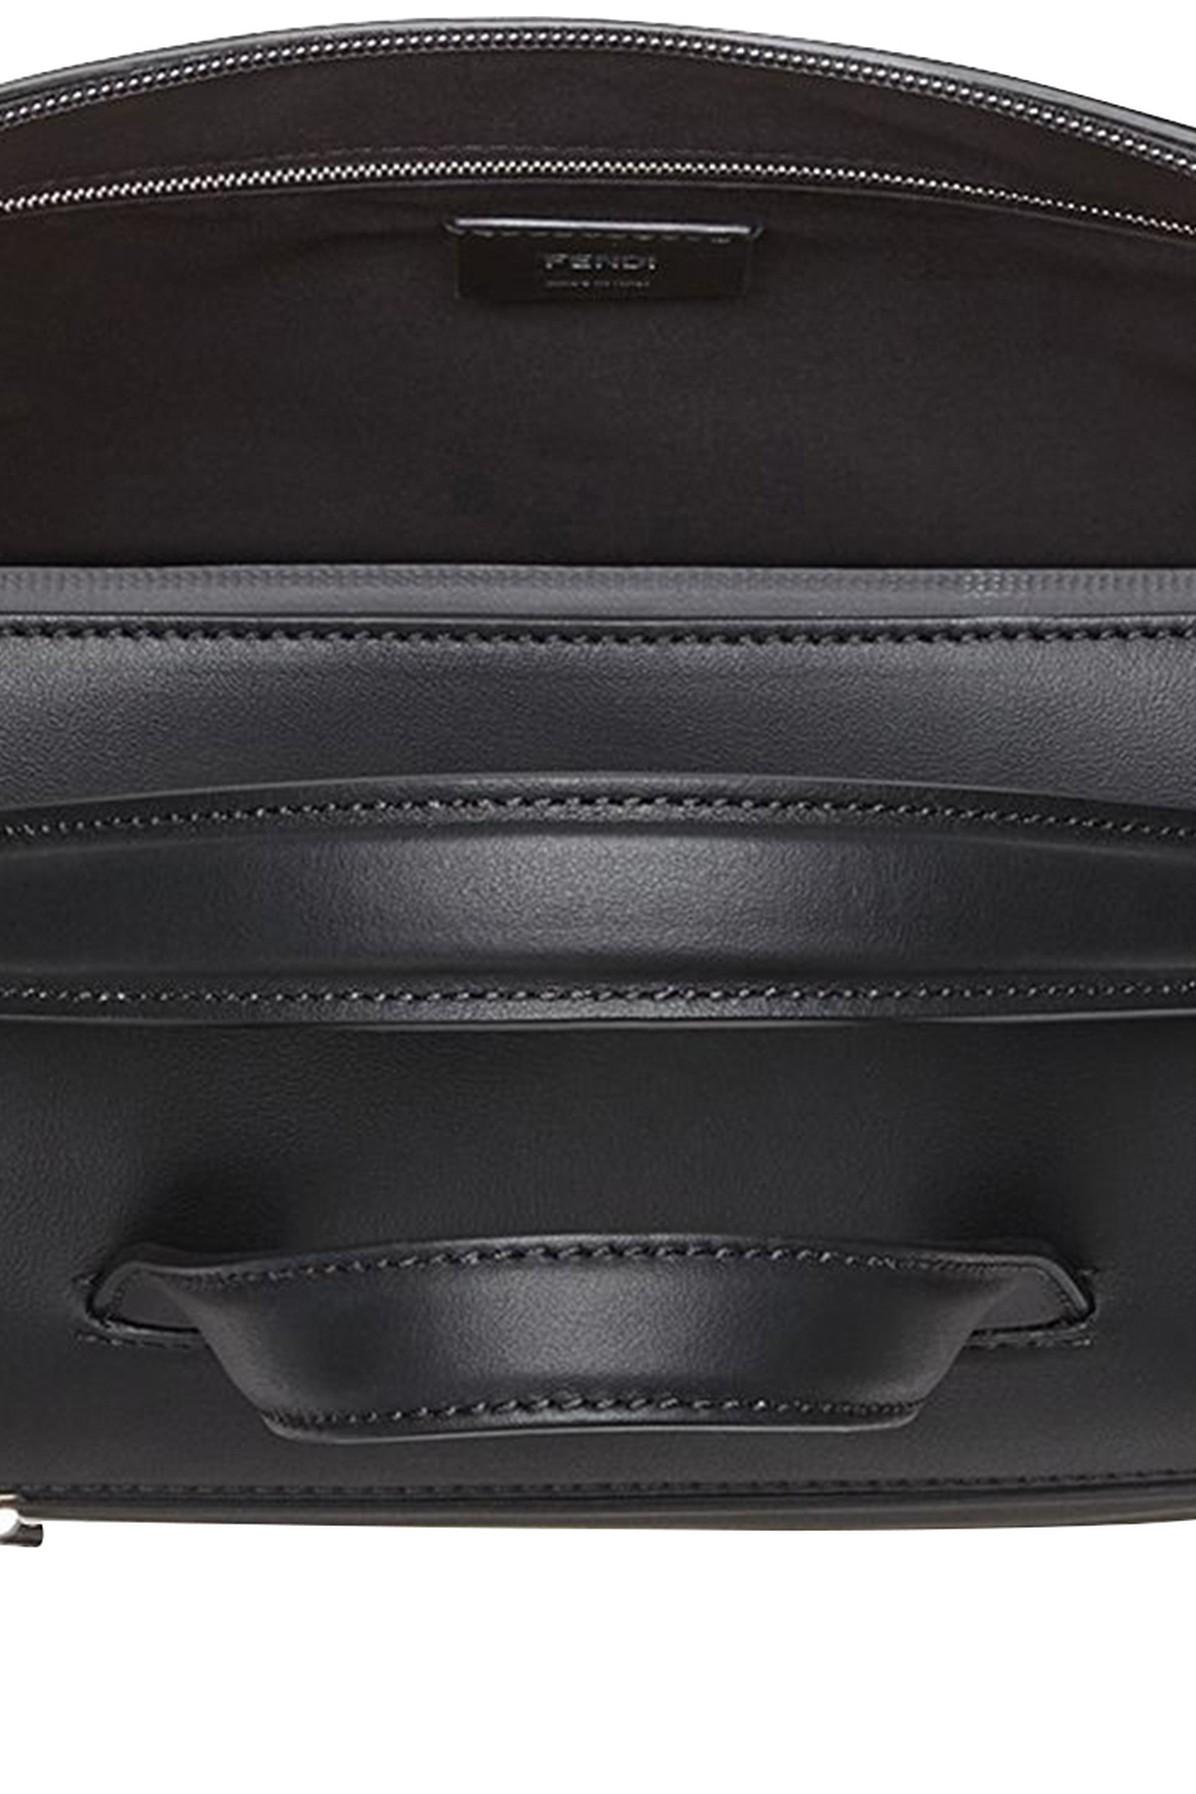 Fendi Black Fabric and Leather Mini Lui Bag Fendi